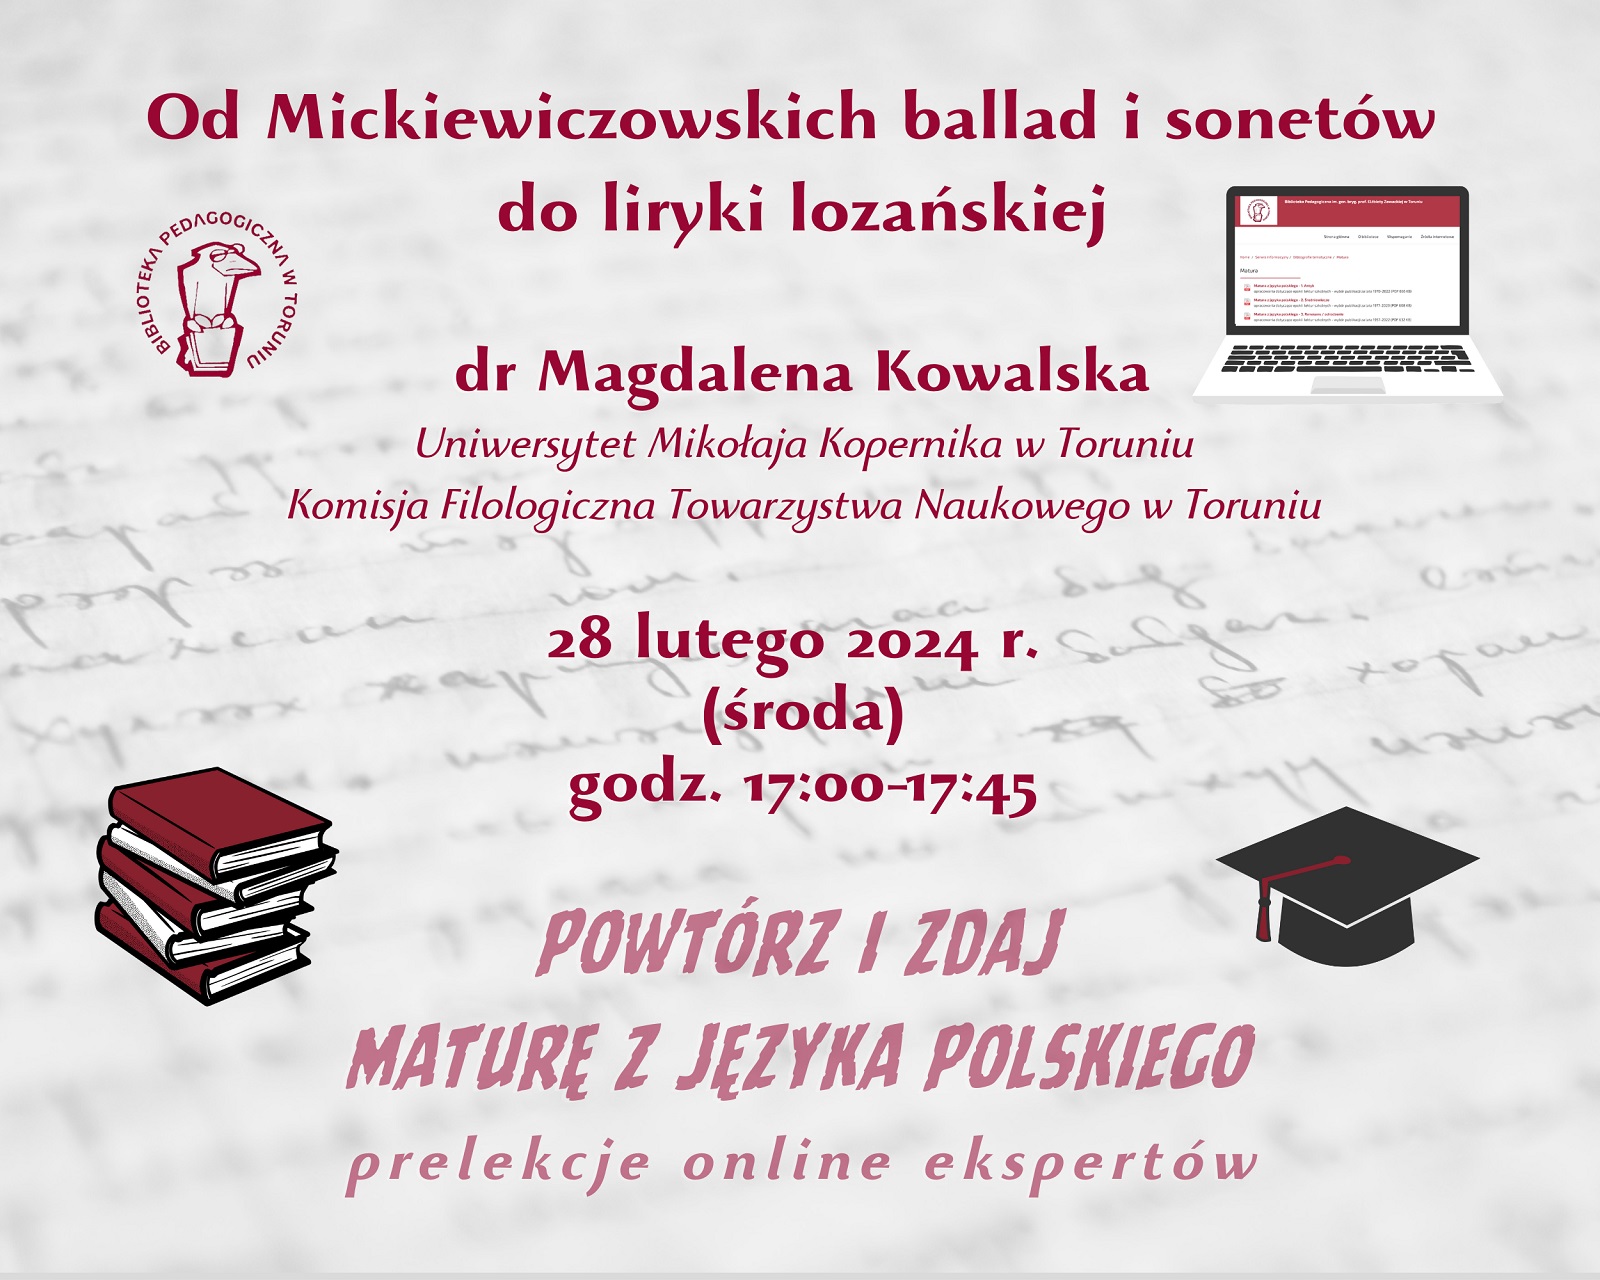 Grafika zapraszająca do udziału w cwykładzie online. W lewym górnym rogu logo Biblioteki Pedagogicznej w Toruniu: ptak w okularach, siedzący na książce, w prawym górnym rogu laptop, w lewym dolnym stos książek a w prawym dolnym czarna czapka absolwencka.